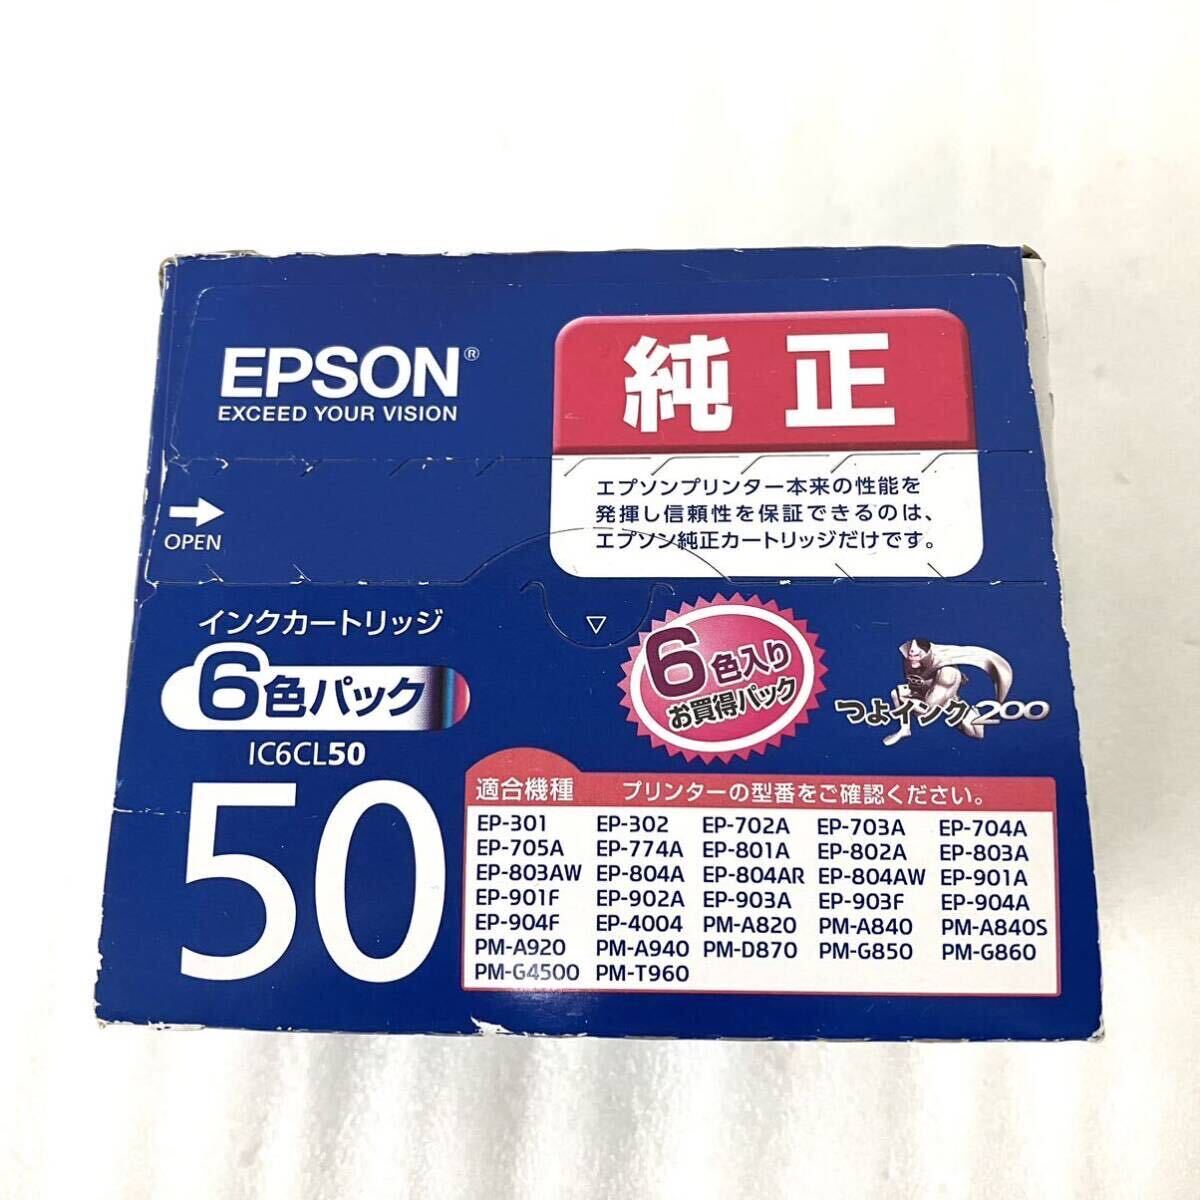 未開封 EPSON エプソン インクカートリッジ IC6CL50 純正 6色パック ブラック マゼンタ イエロー EP-301 EP-901F PM-A920 _画像3